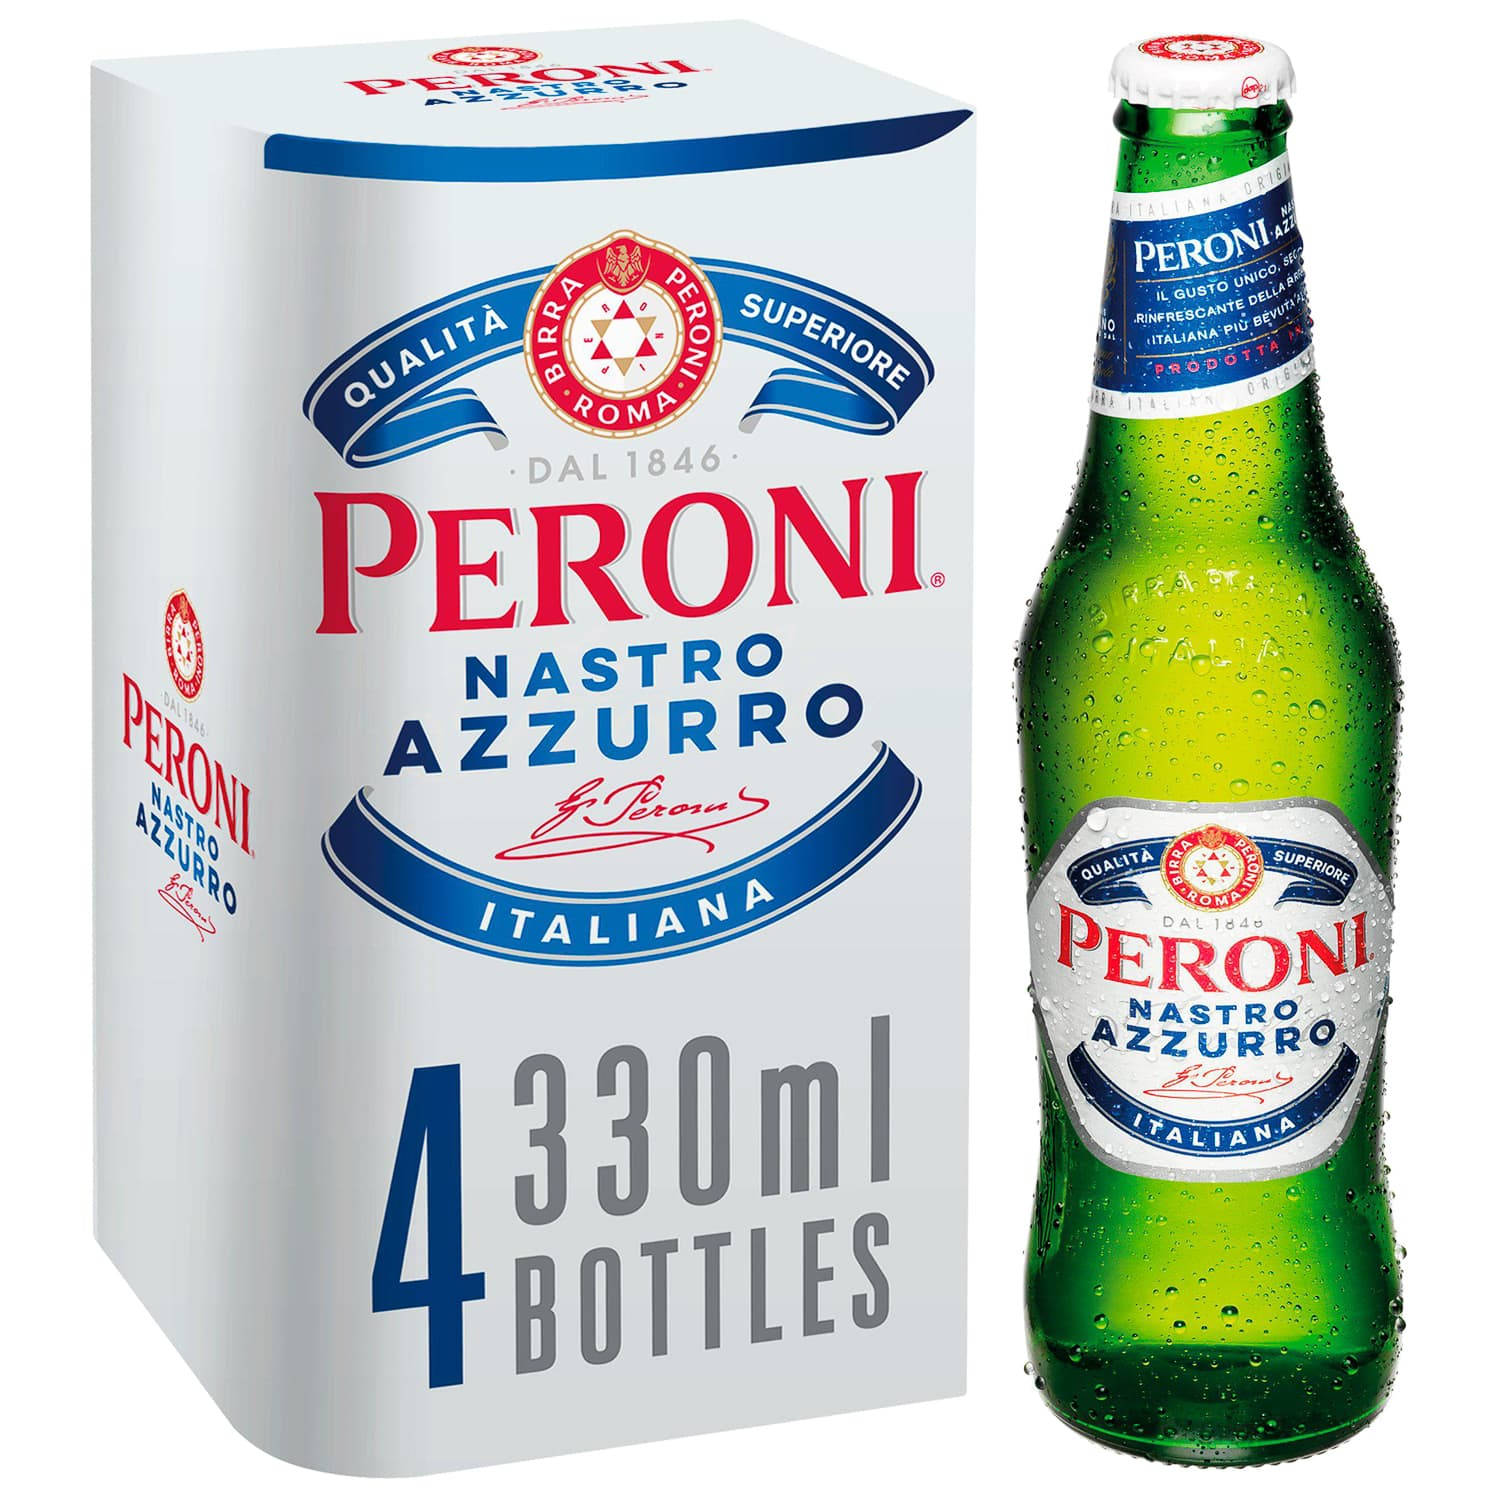 Firen en fire-pakke æske med Peroni øl Wallpaper